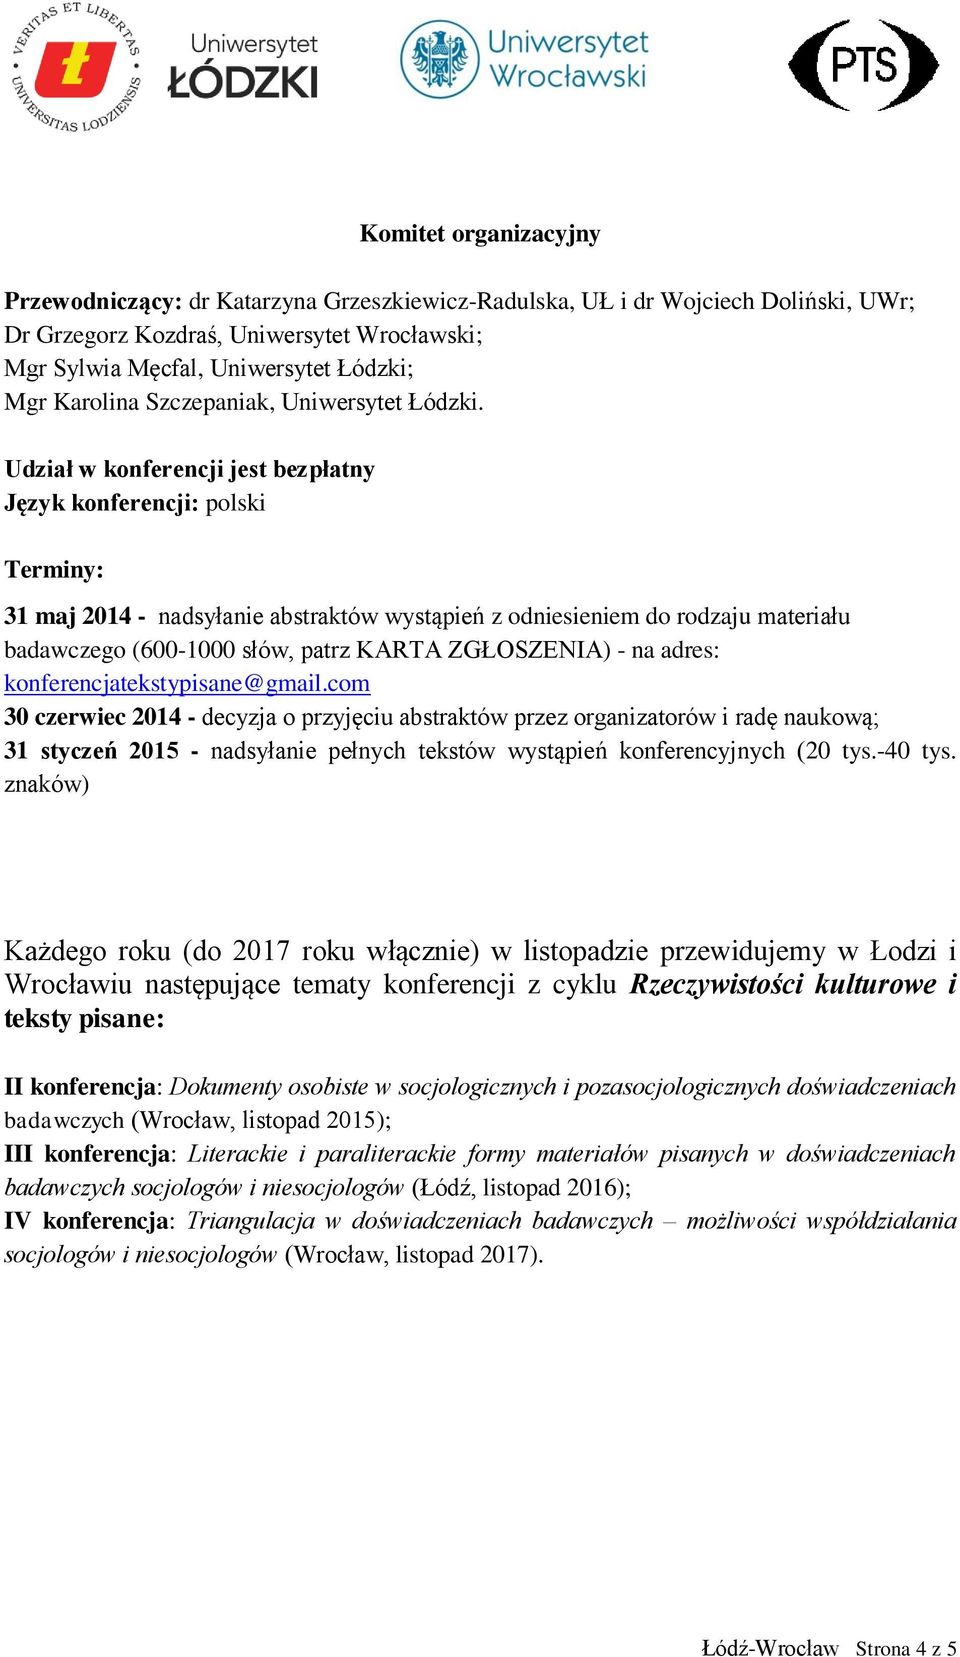 Udział w konferencji jest bezpłatny Język konferencji: polski Terminy: 31 maj 2014 - nadsyłanie abstraktów wystąpień z odniesieniem do rodzaju materiału badawczego (600-1000 słów, patrz KARTA